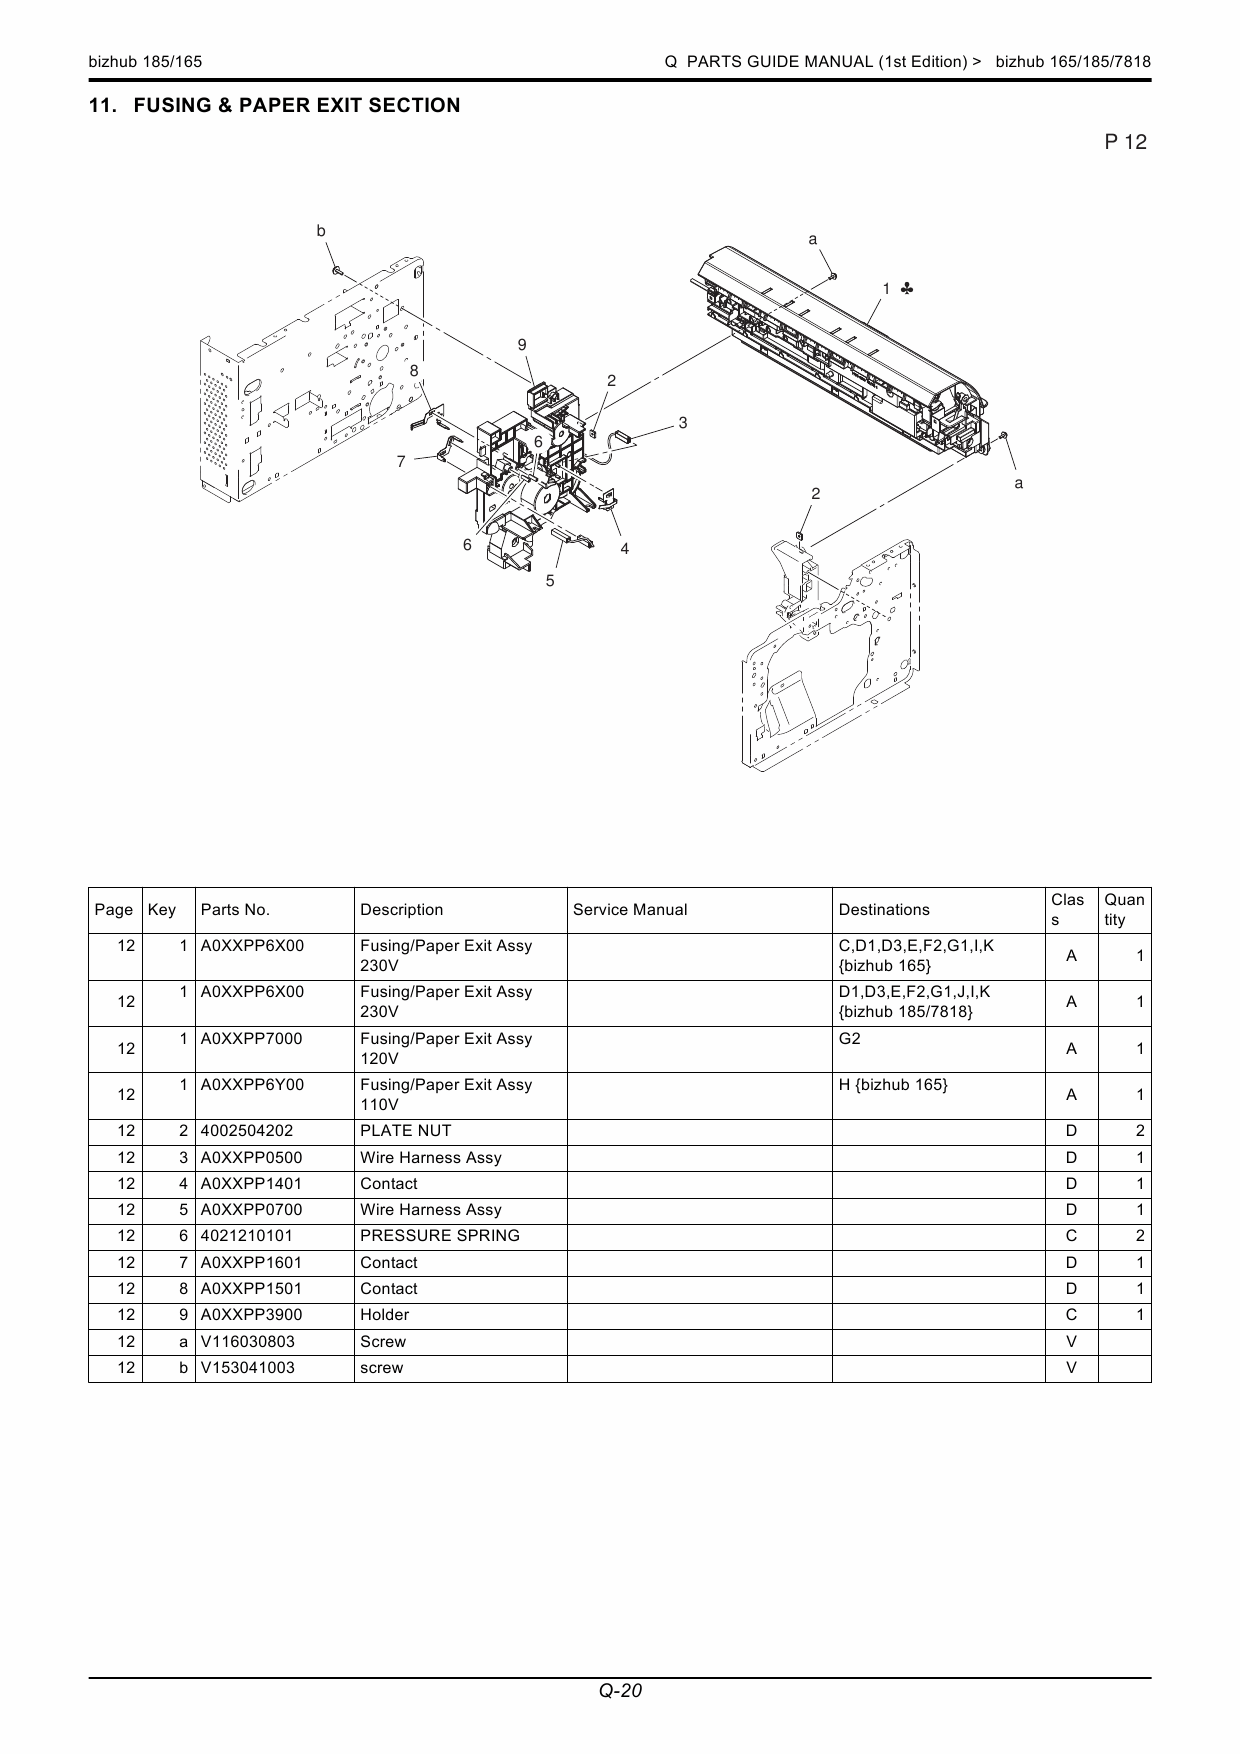 Konica-Minolta bizhub 165 185 Service Manual-6